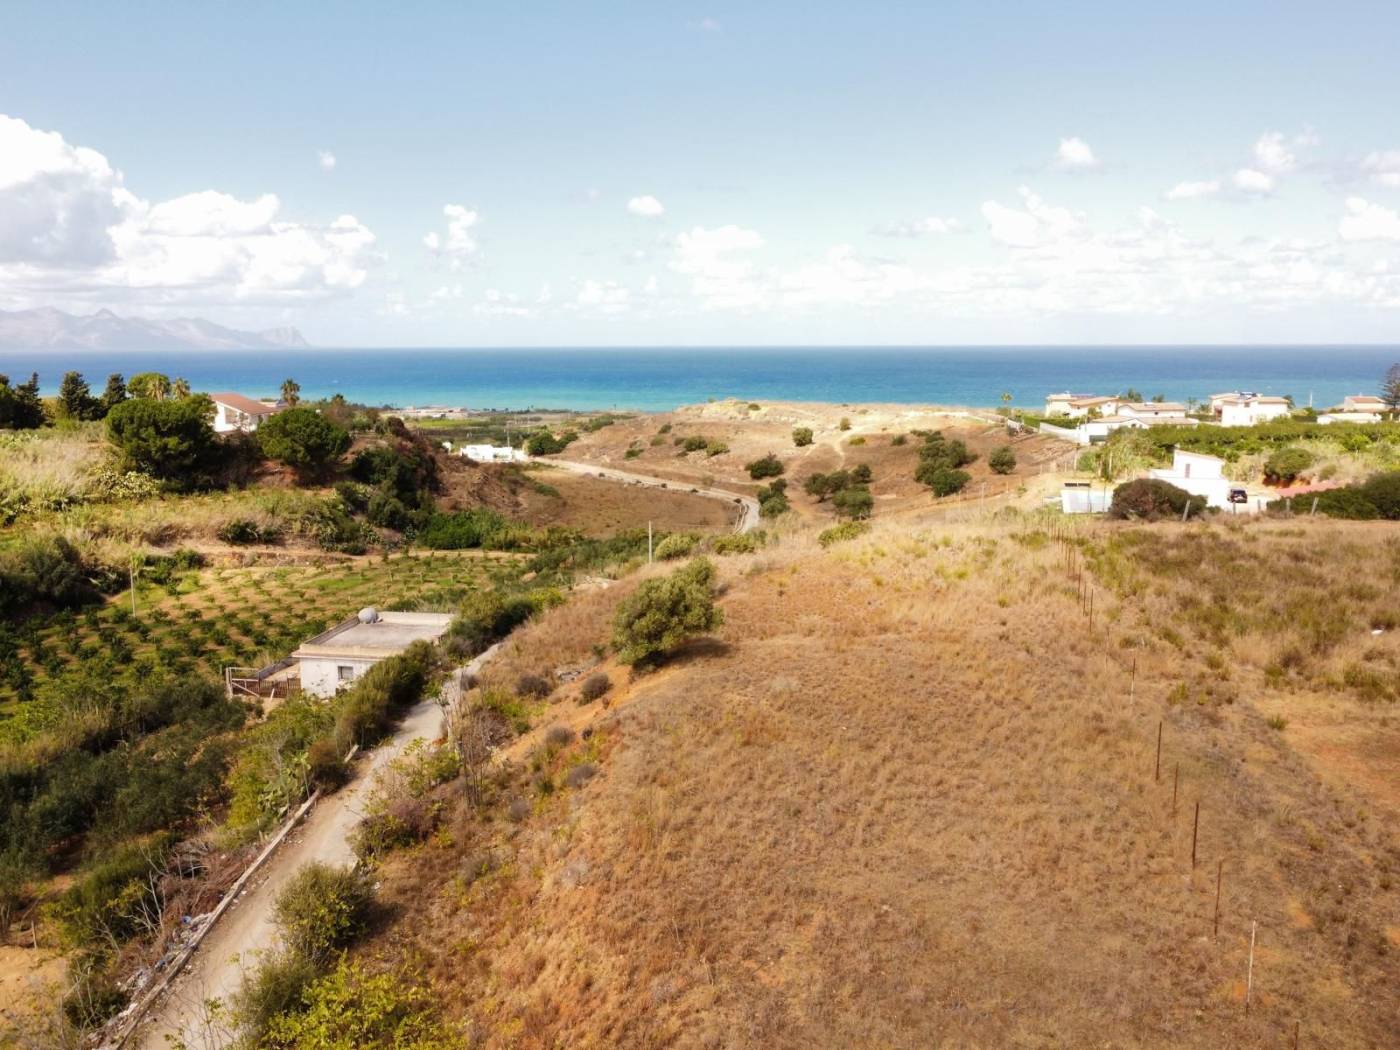 Immobiliare Spica vende terreno panoramico, sito in contrada Badiella tra Balestrate e Trappeto. il terreno si estende per circa 4000 mq, gode di 